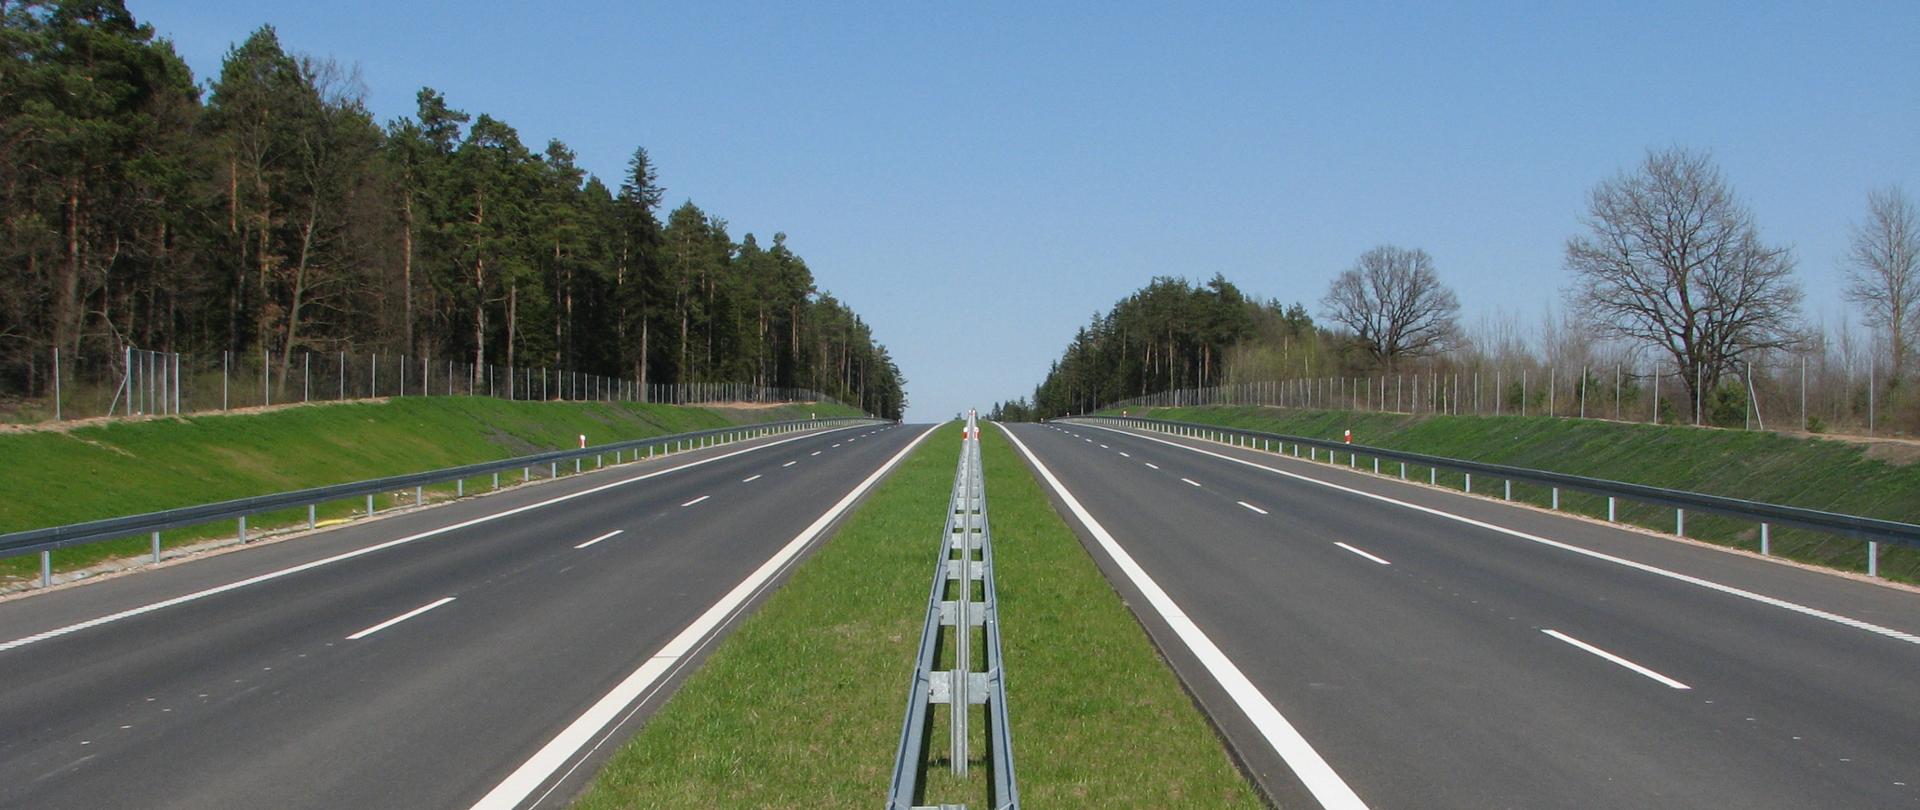 Droga ekspresowa - zdjęcie poglądowe, dwie jezdnie, zielony pas rozdziału z barierami, przy drodze las